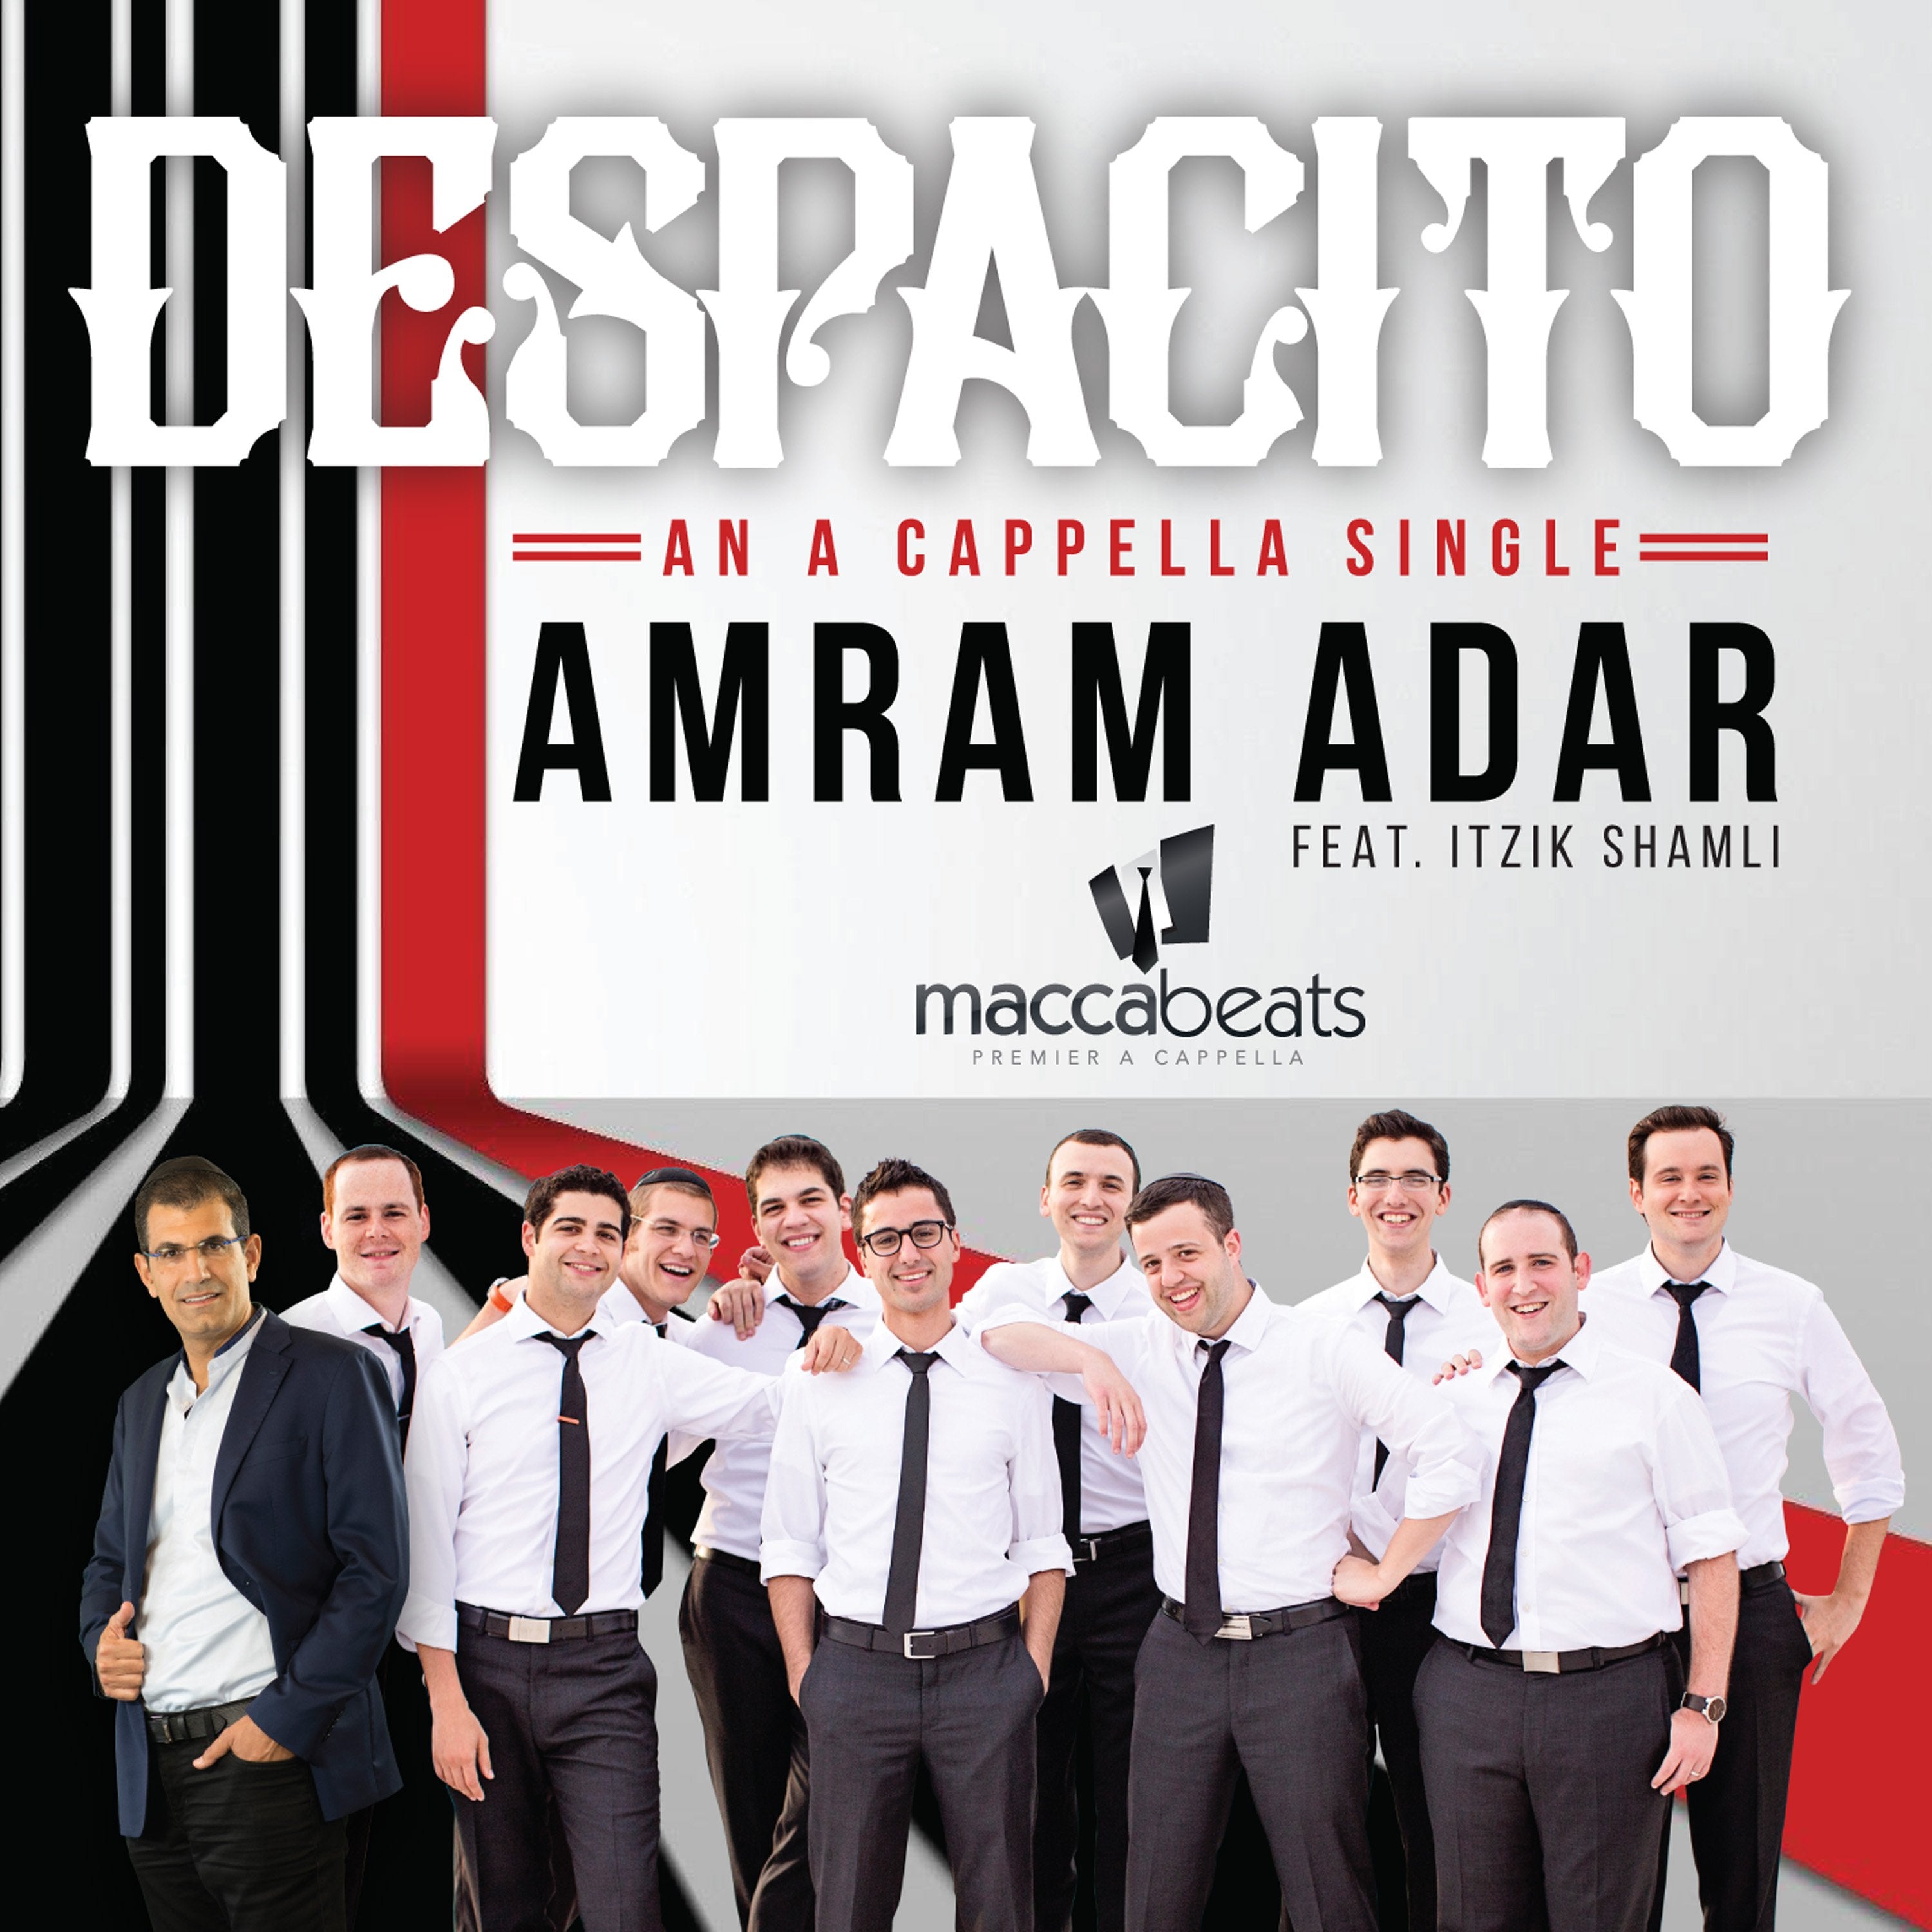 Amram Adar feat Itzik Shamli & The Maccabeats - Despacito A Cappella